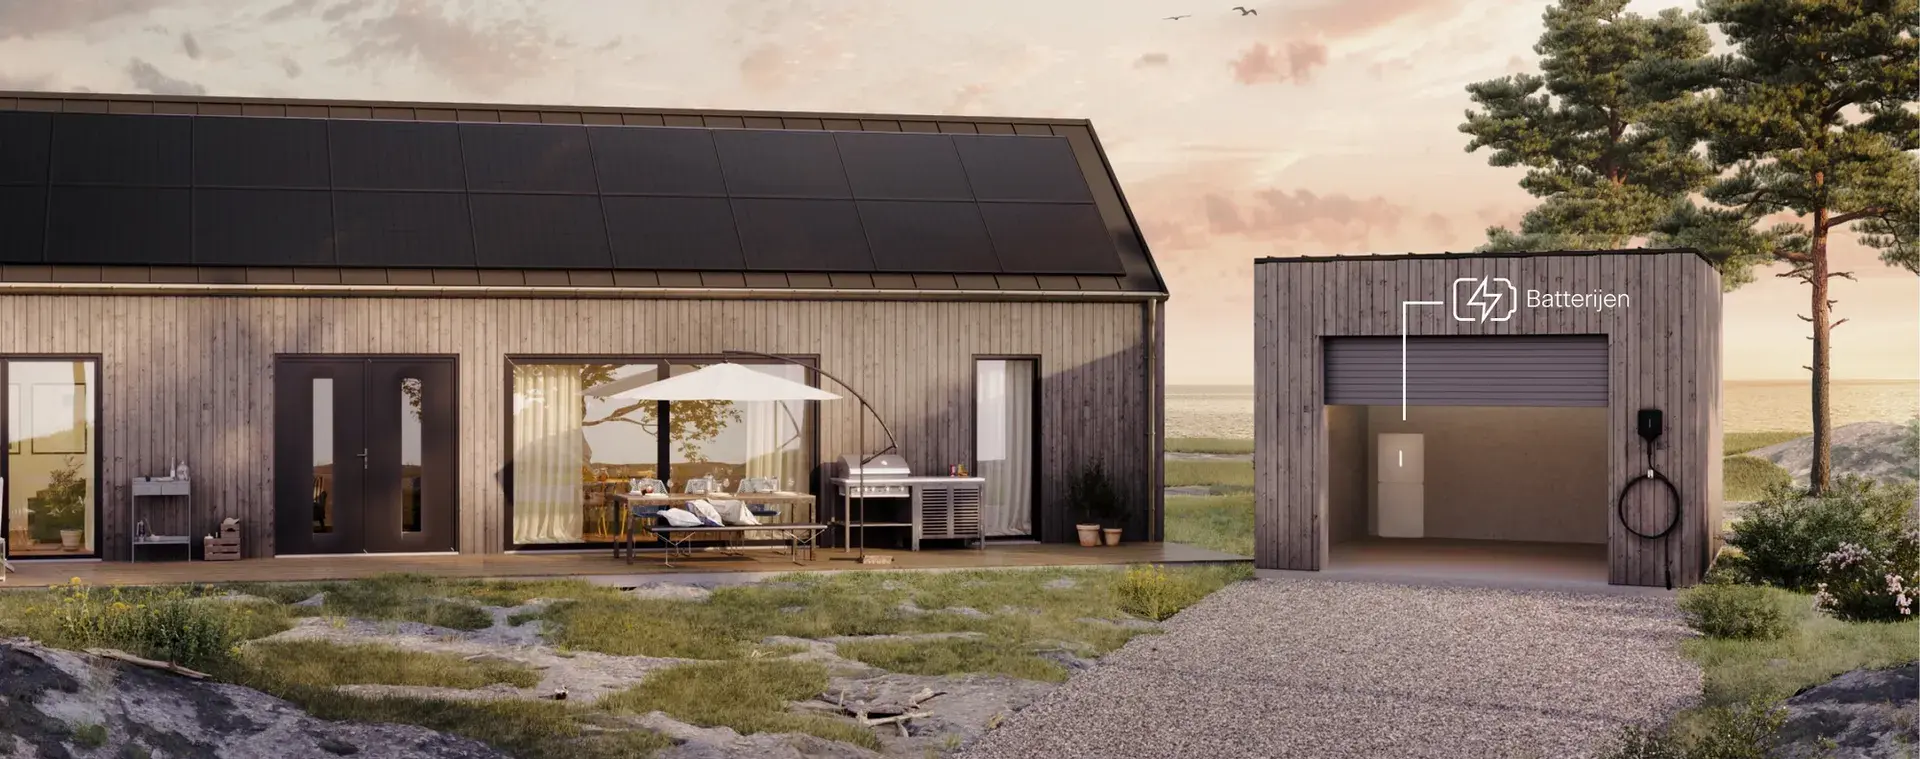 Huis met zonne-installatie en thuisbatterij van Svea Solar